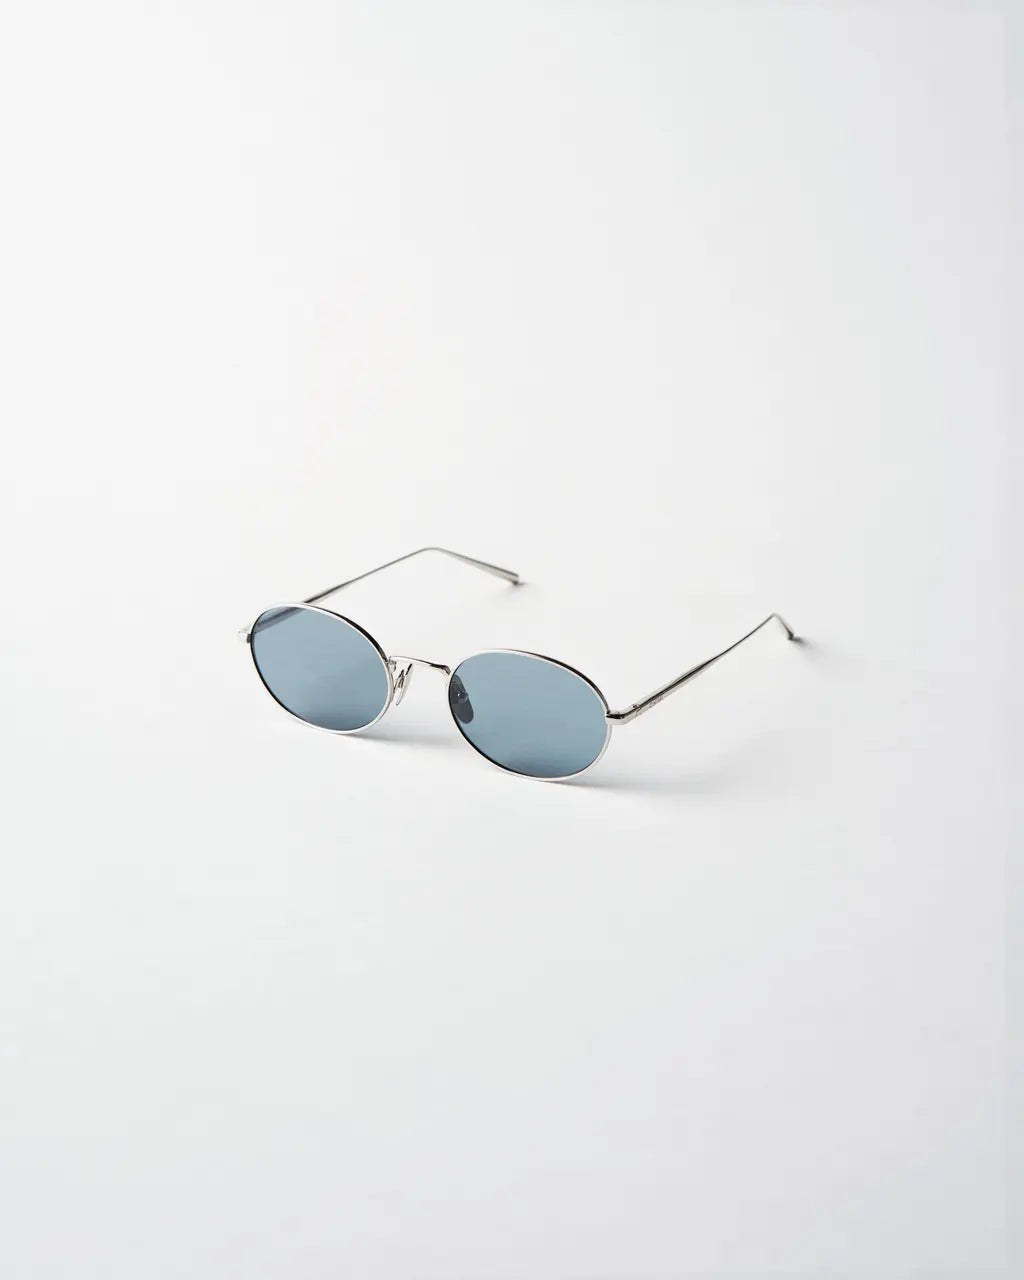 Chimi Eyewear Oval Silver/Blue